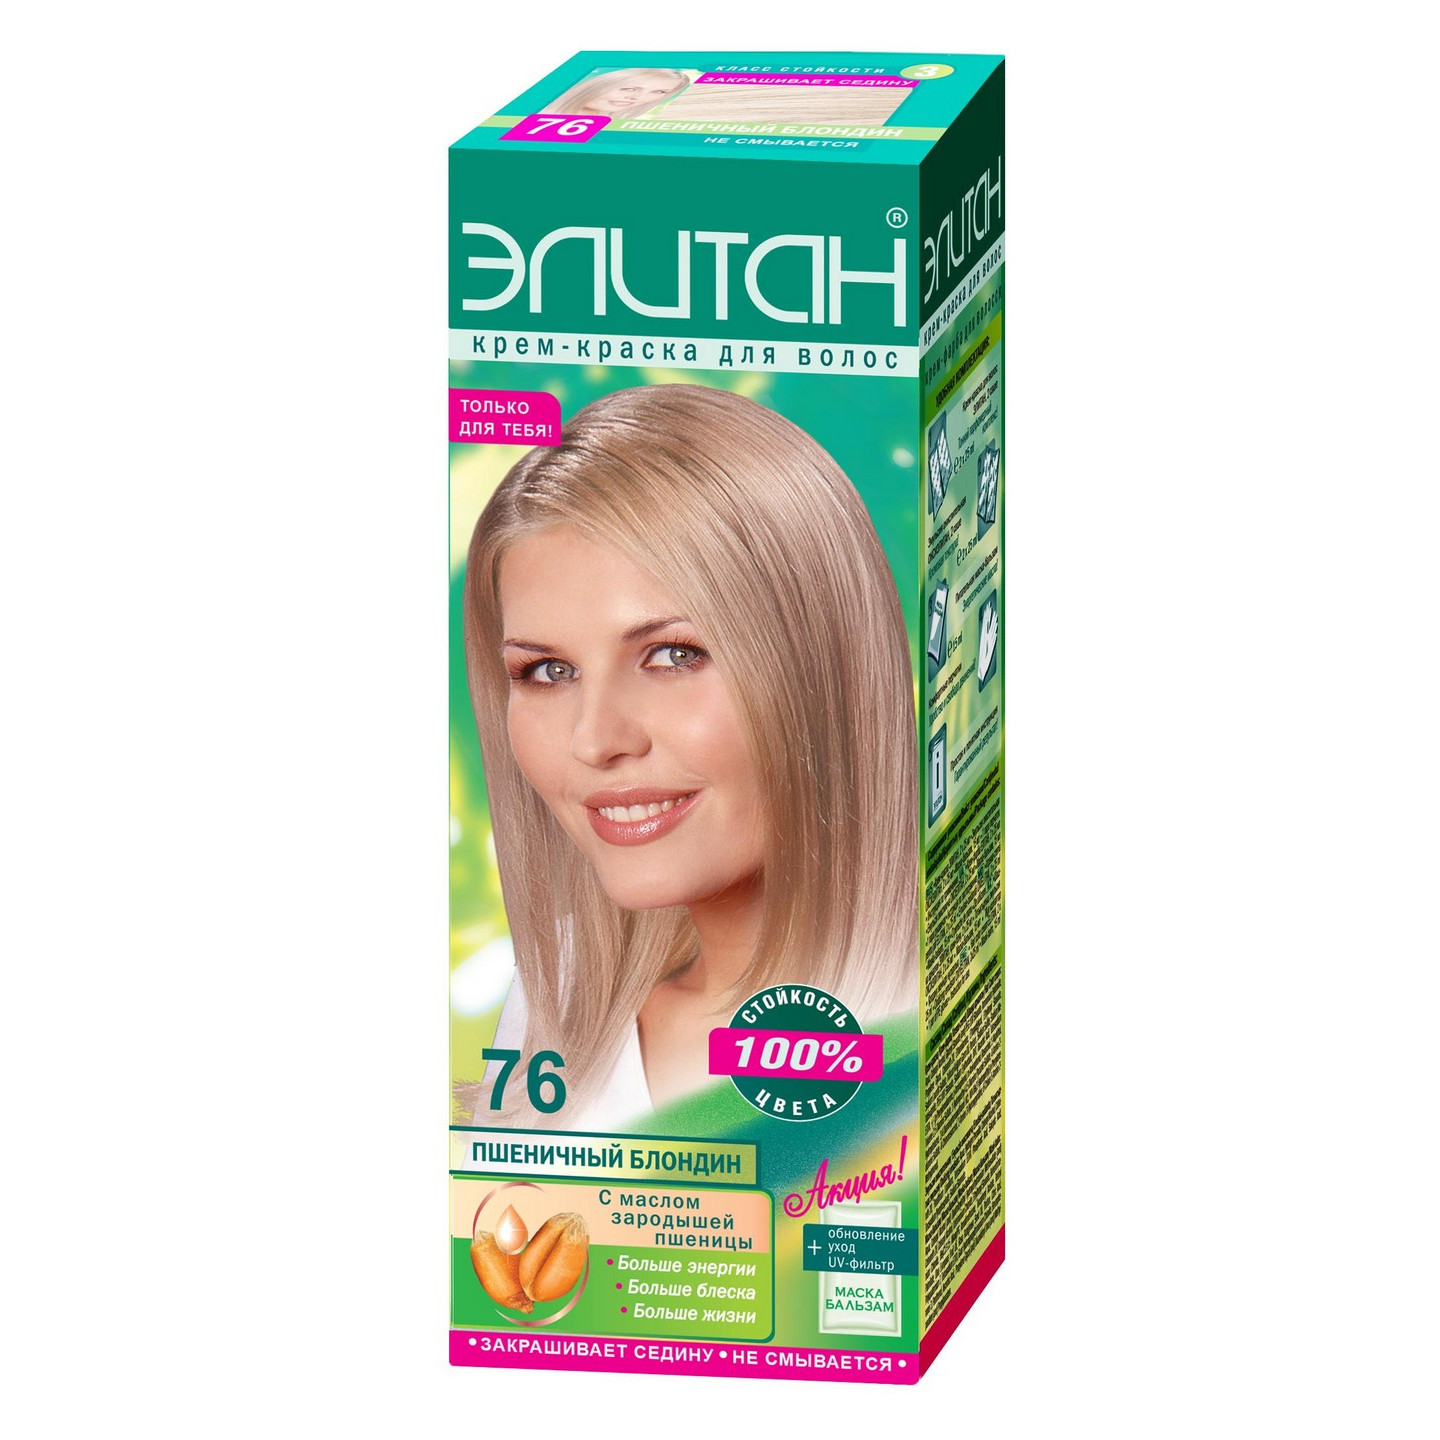 Стійка крем-фарба для волосся «Elitan», №76 — Пшеничний блонд